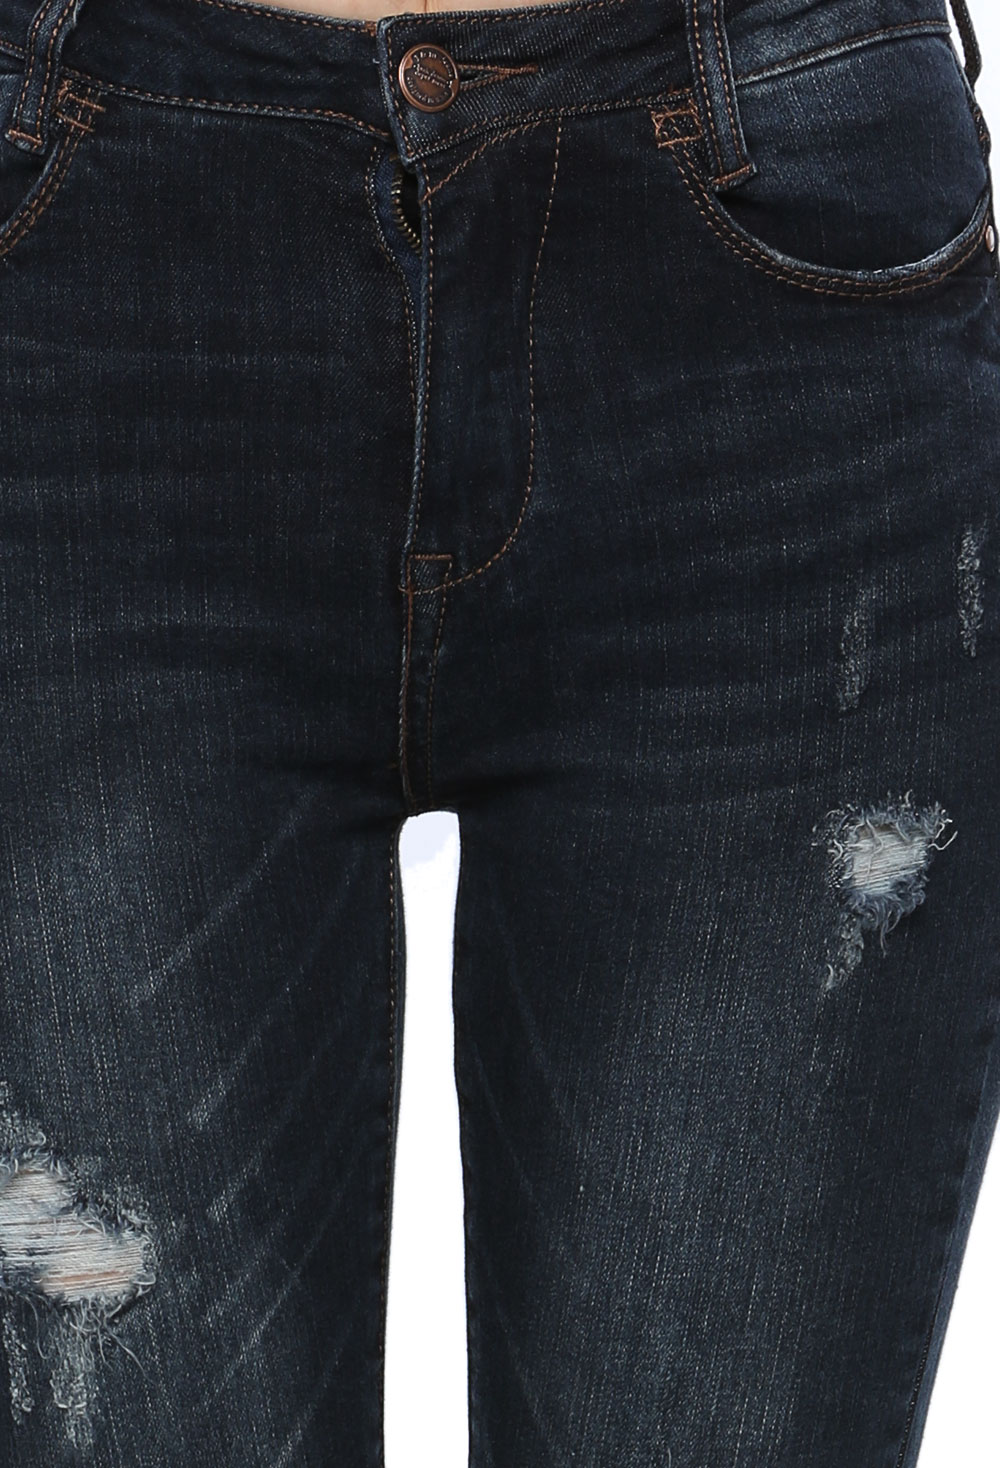 Destroyed Dark Denim Jeans